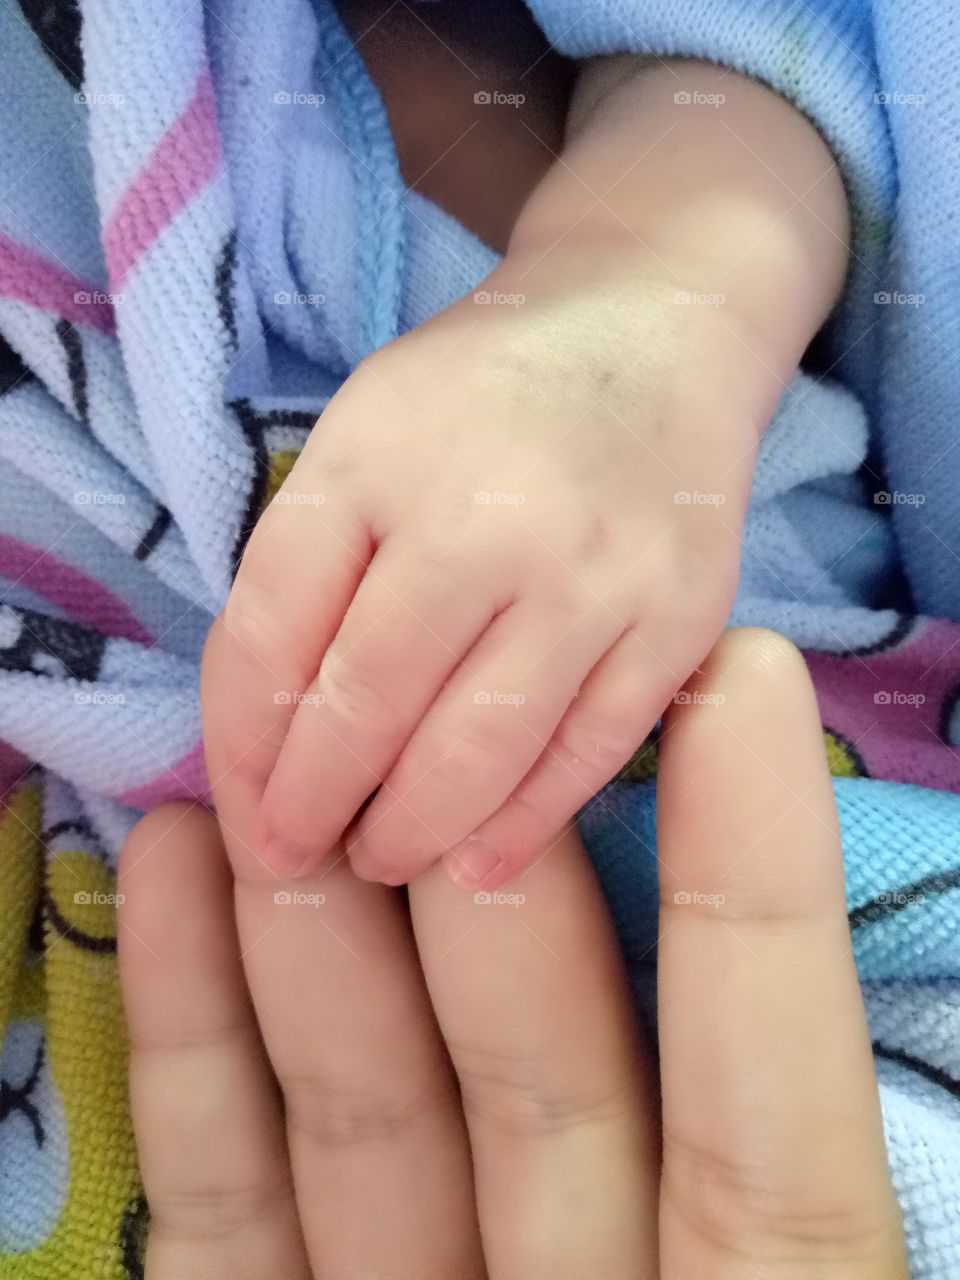 A newborn's hand.